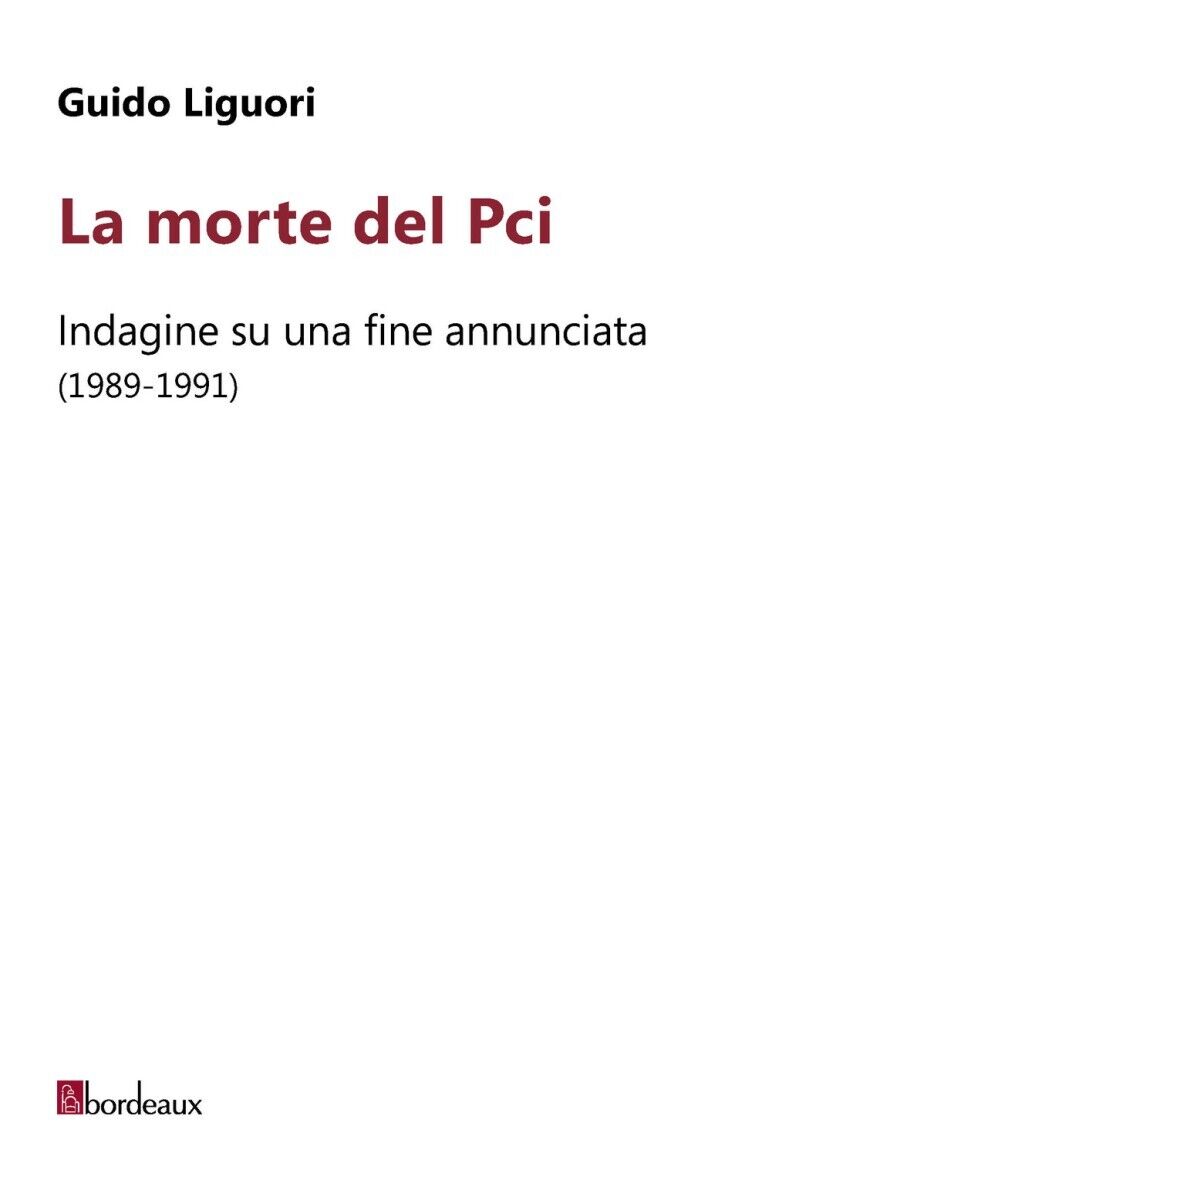  La morte del PCI. Indagine su una fine annunciata (1989-1991) di Guido Liguori libro usato